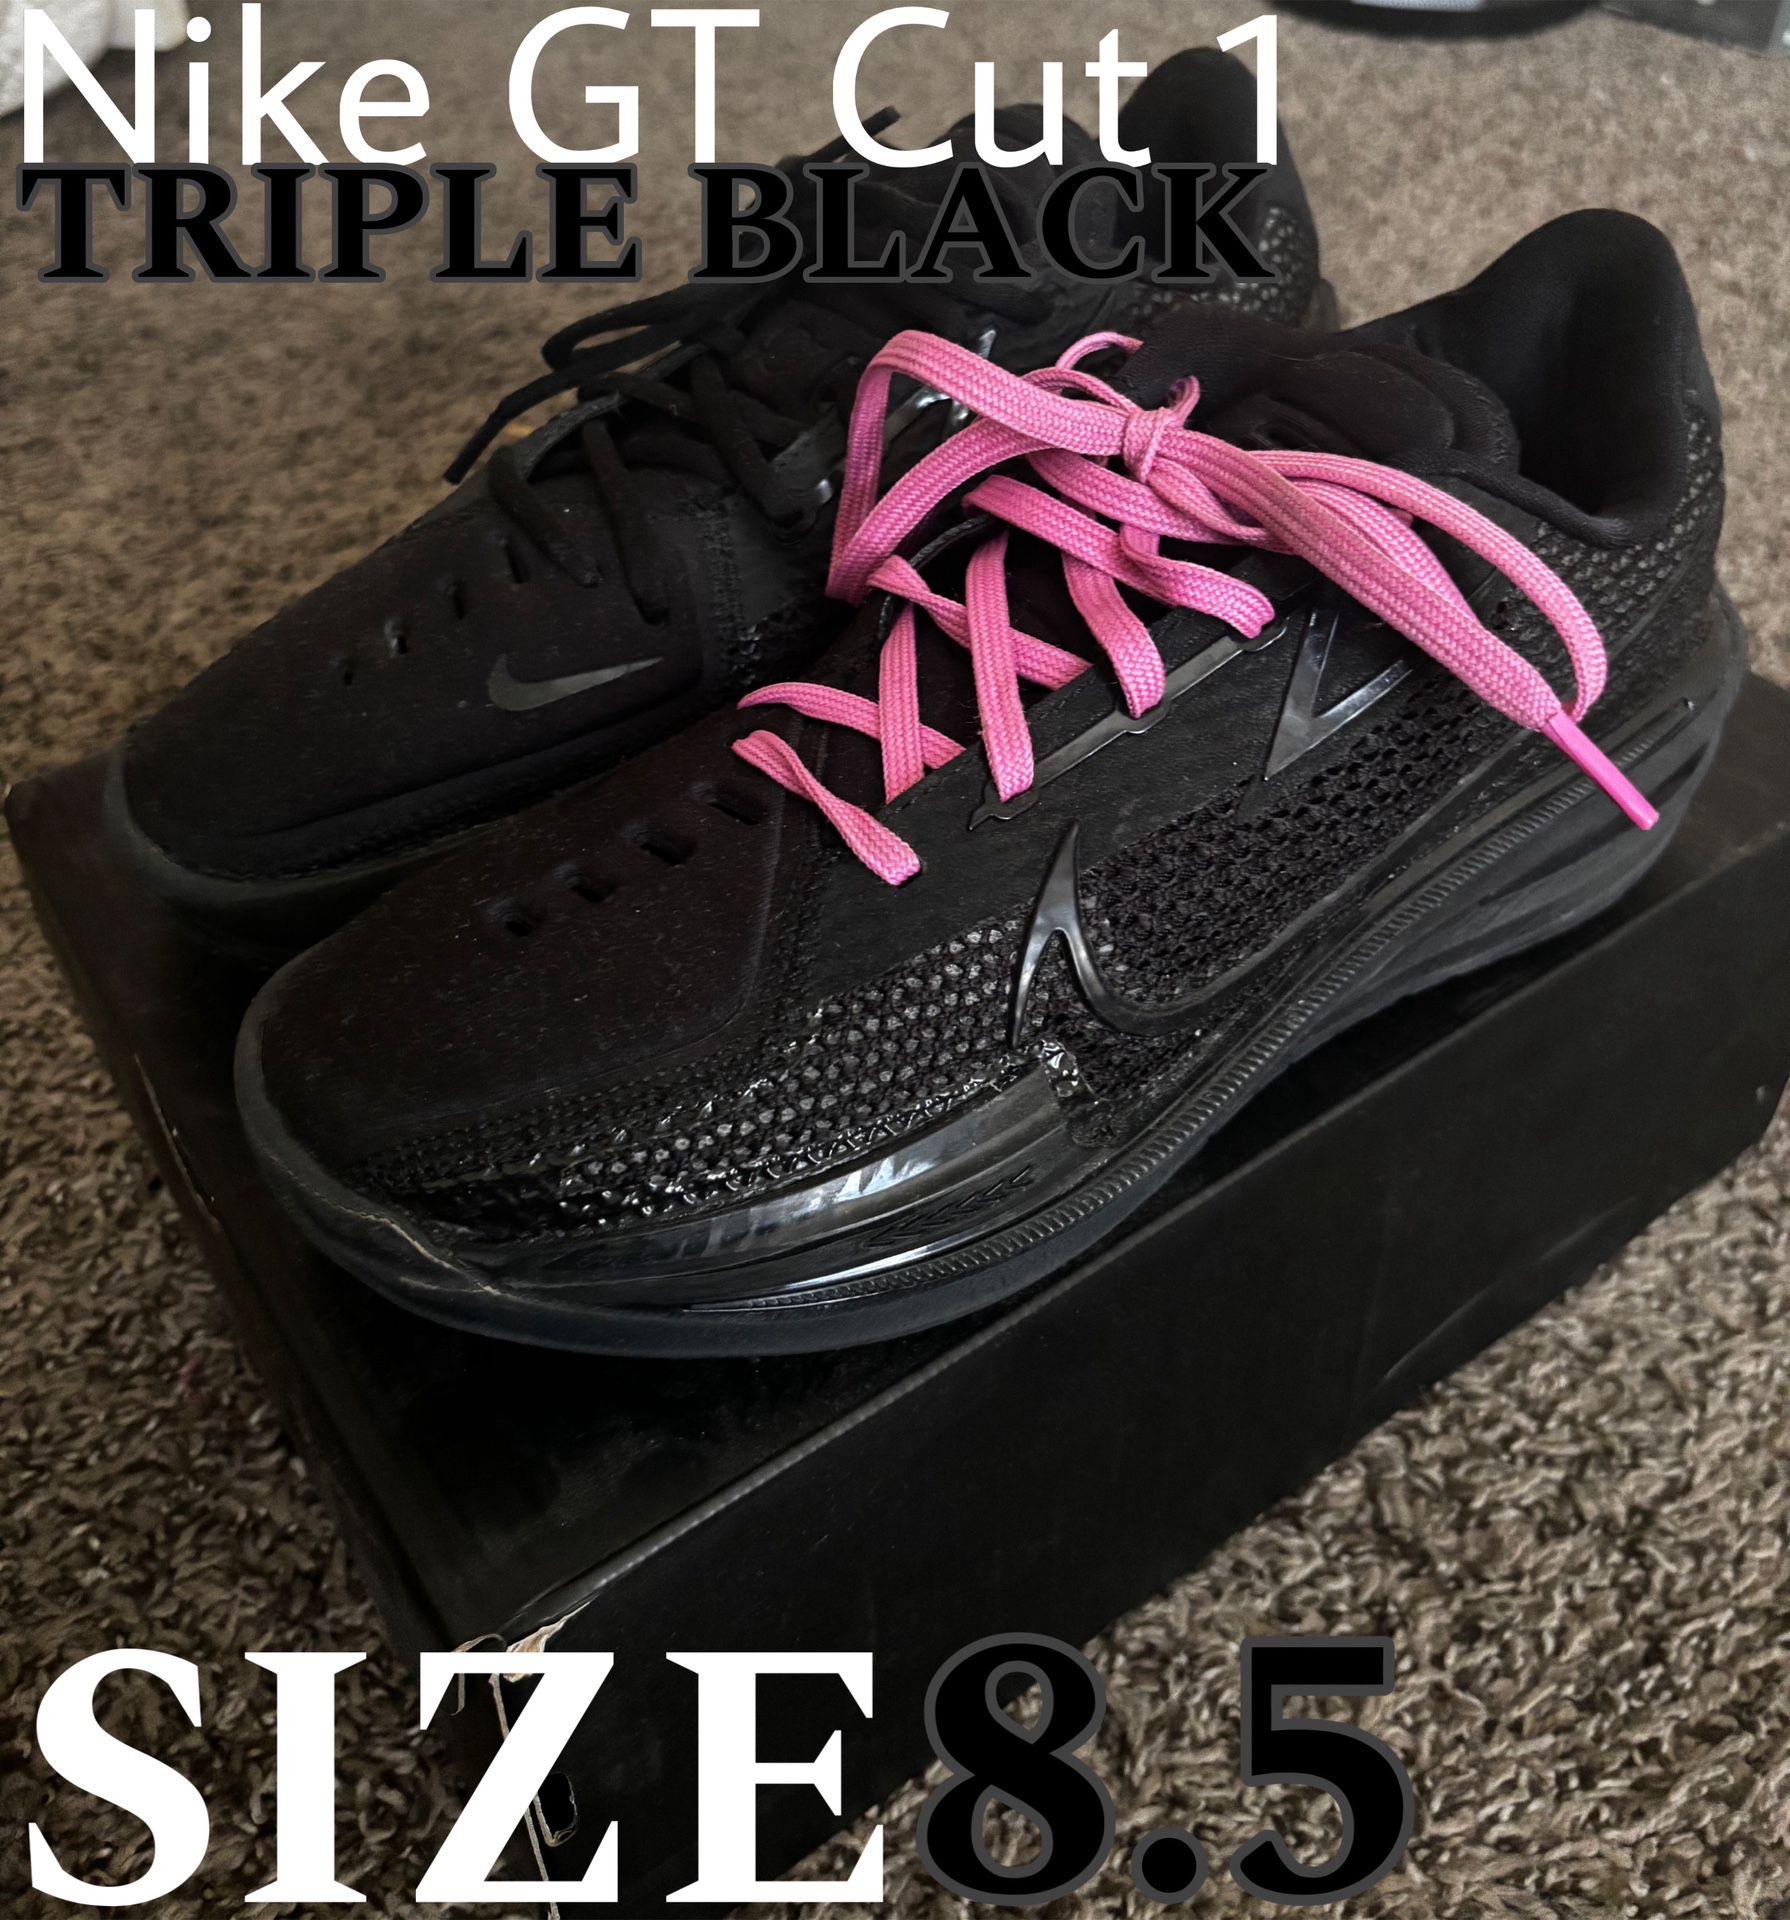 Nike GT Cut 1 “Triple Black”